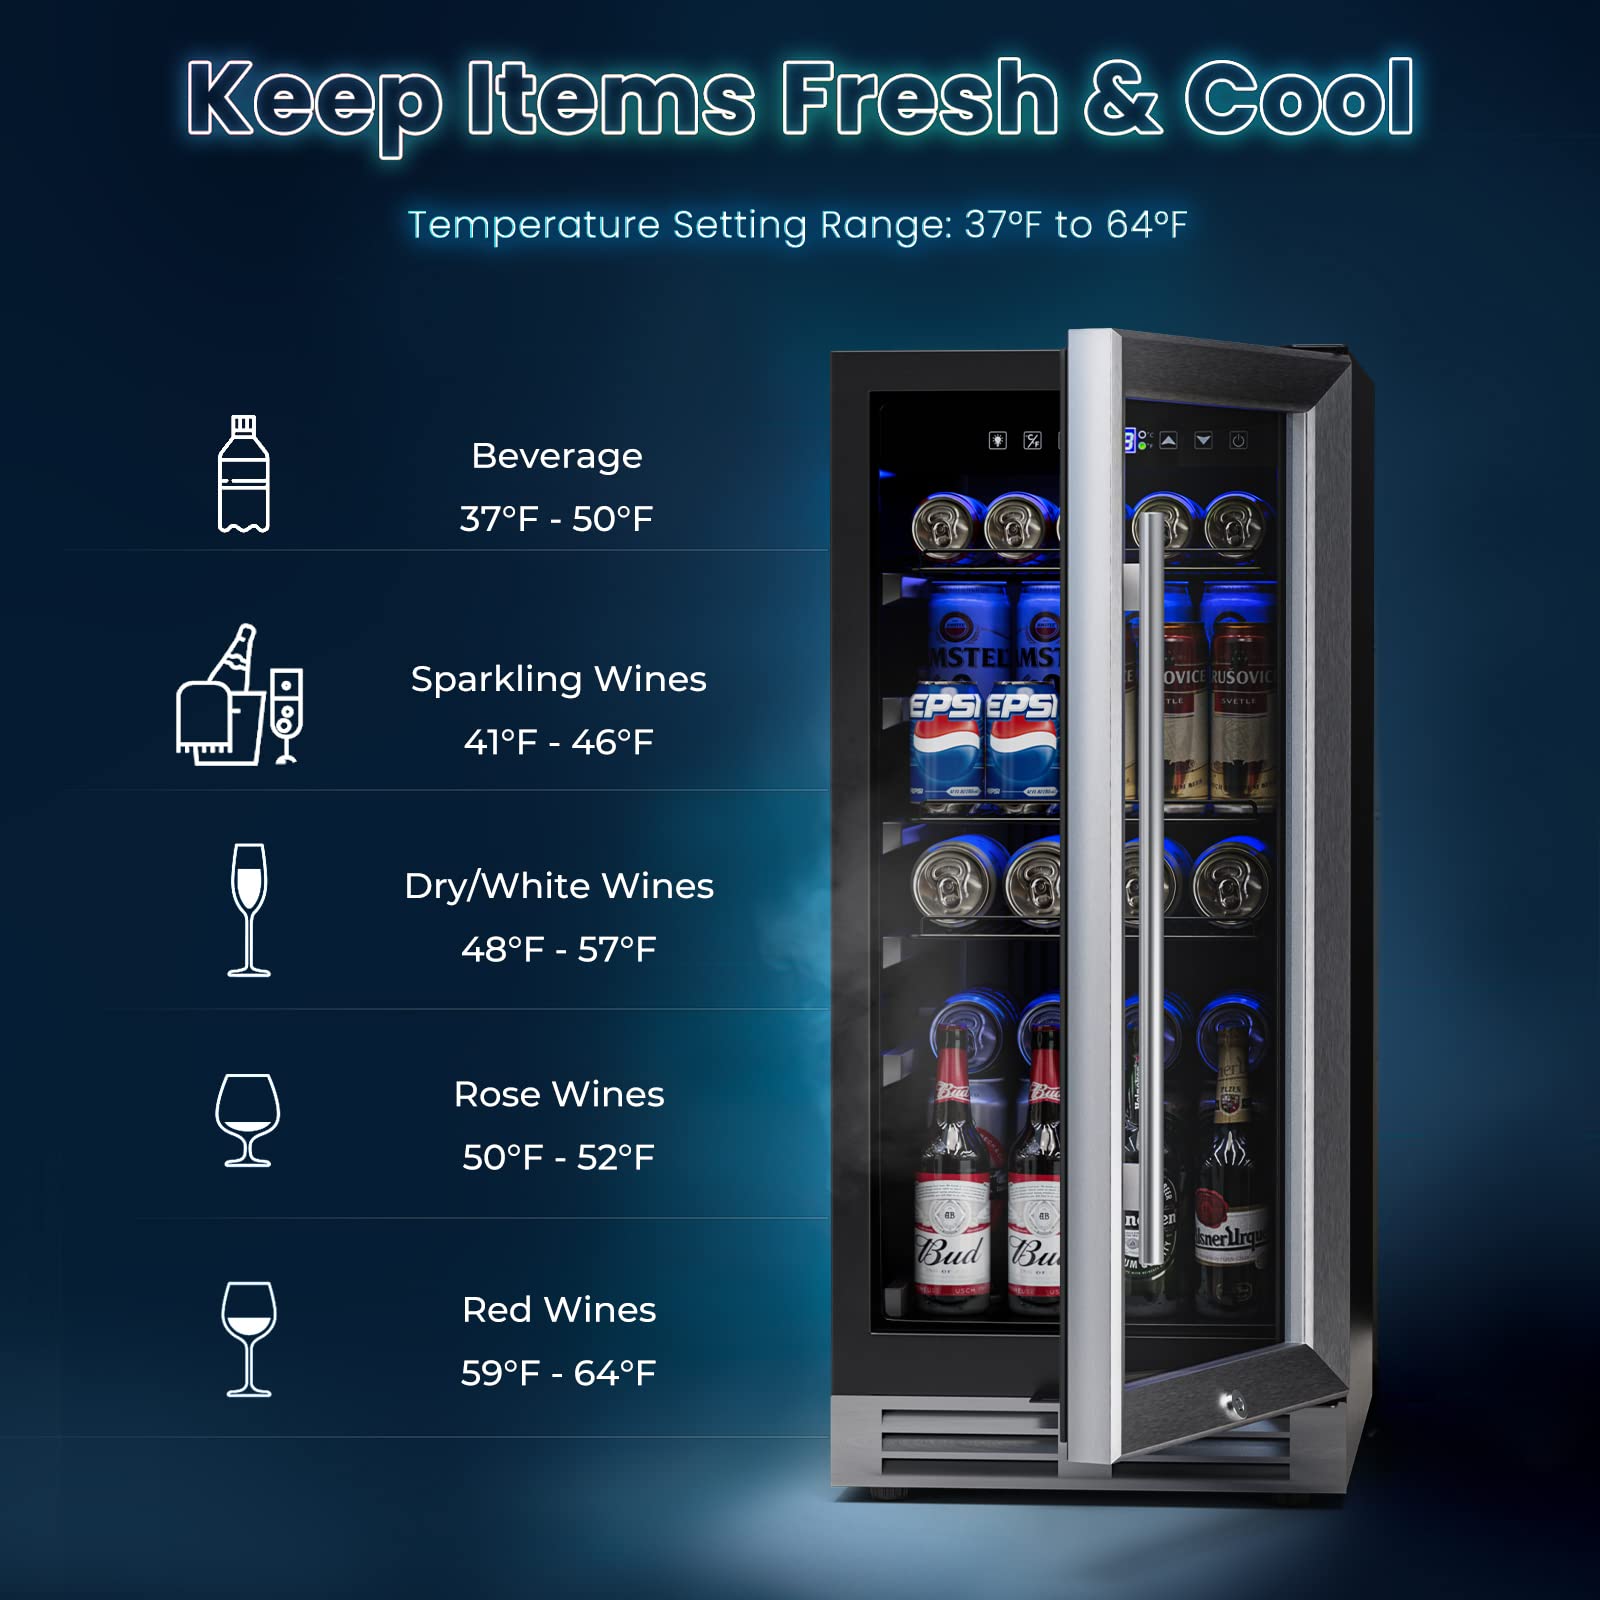 ORALNER 15“ Beverage Refrigerator Cooler Under Counter-100 Cans Mini Fridge Built-in/Freestanding Drink Fridge for Soda Beer, Lockable Glass Door Adjustable Shelves, Blue LED Light for Kitchen Bar